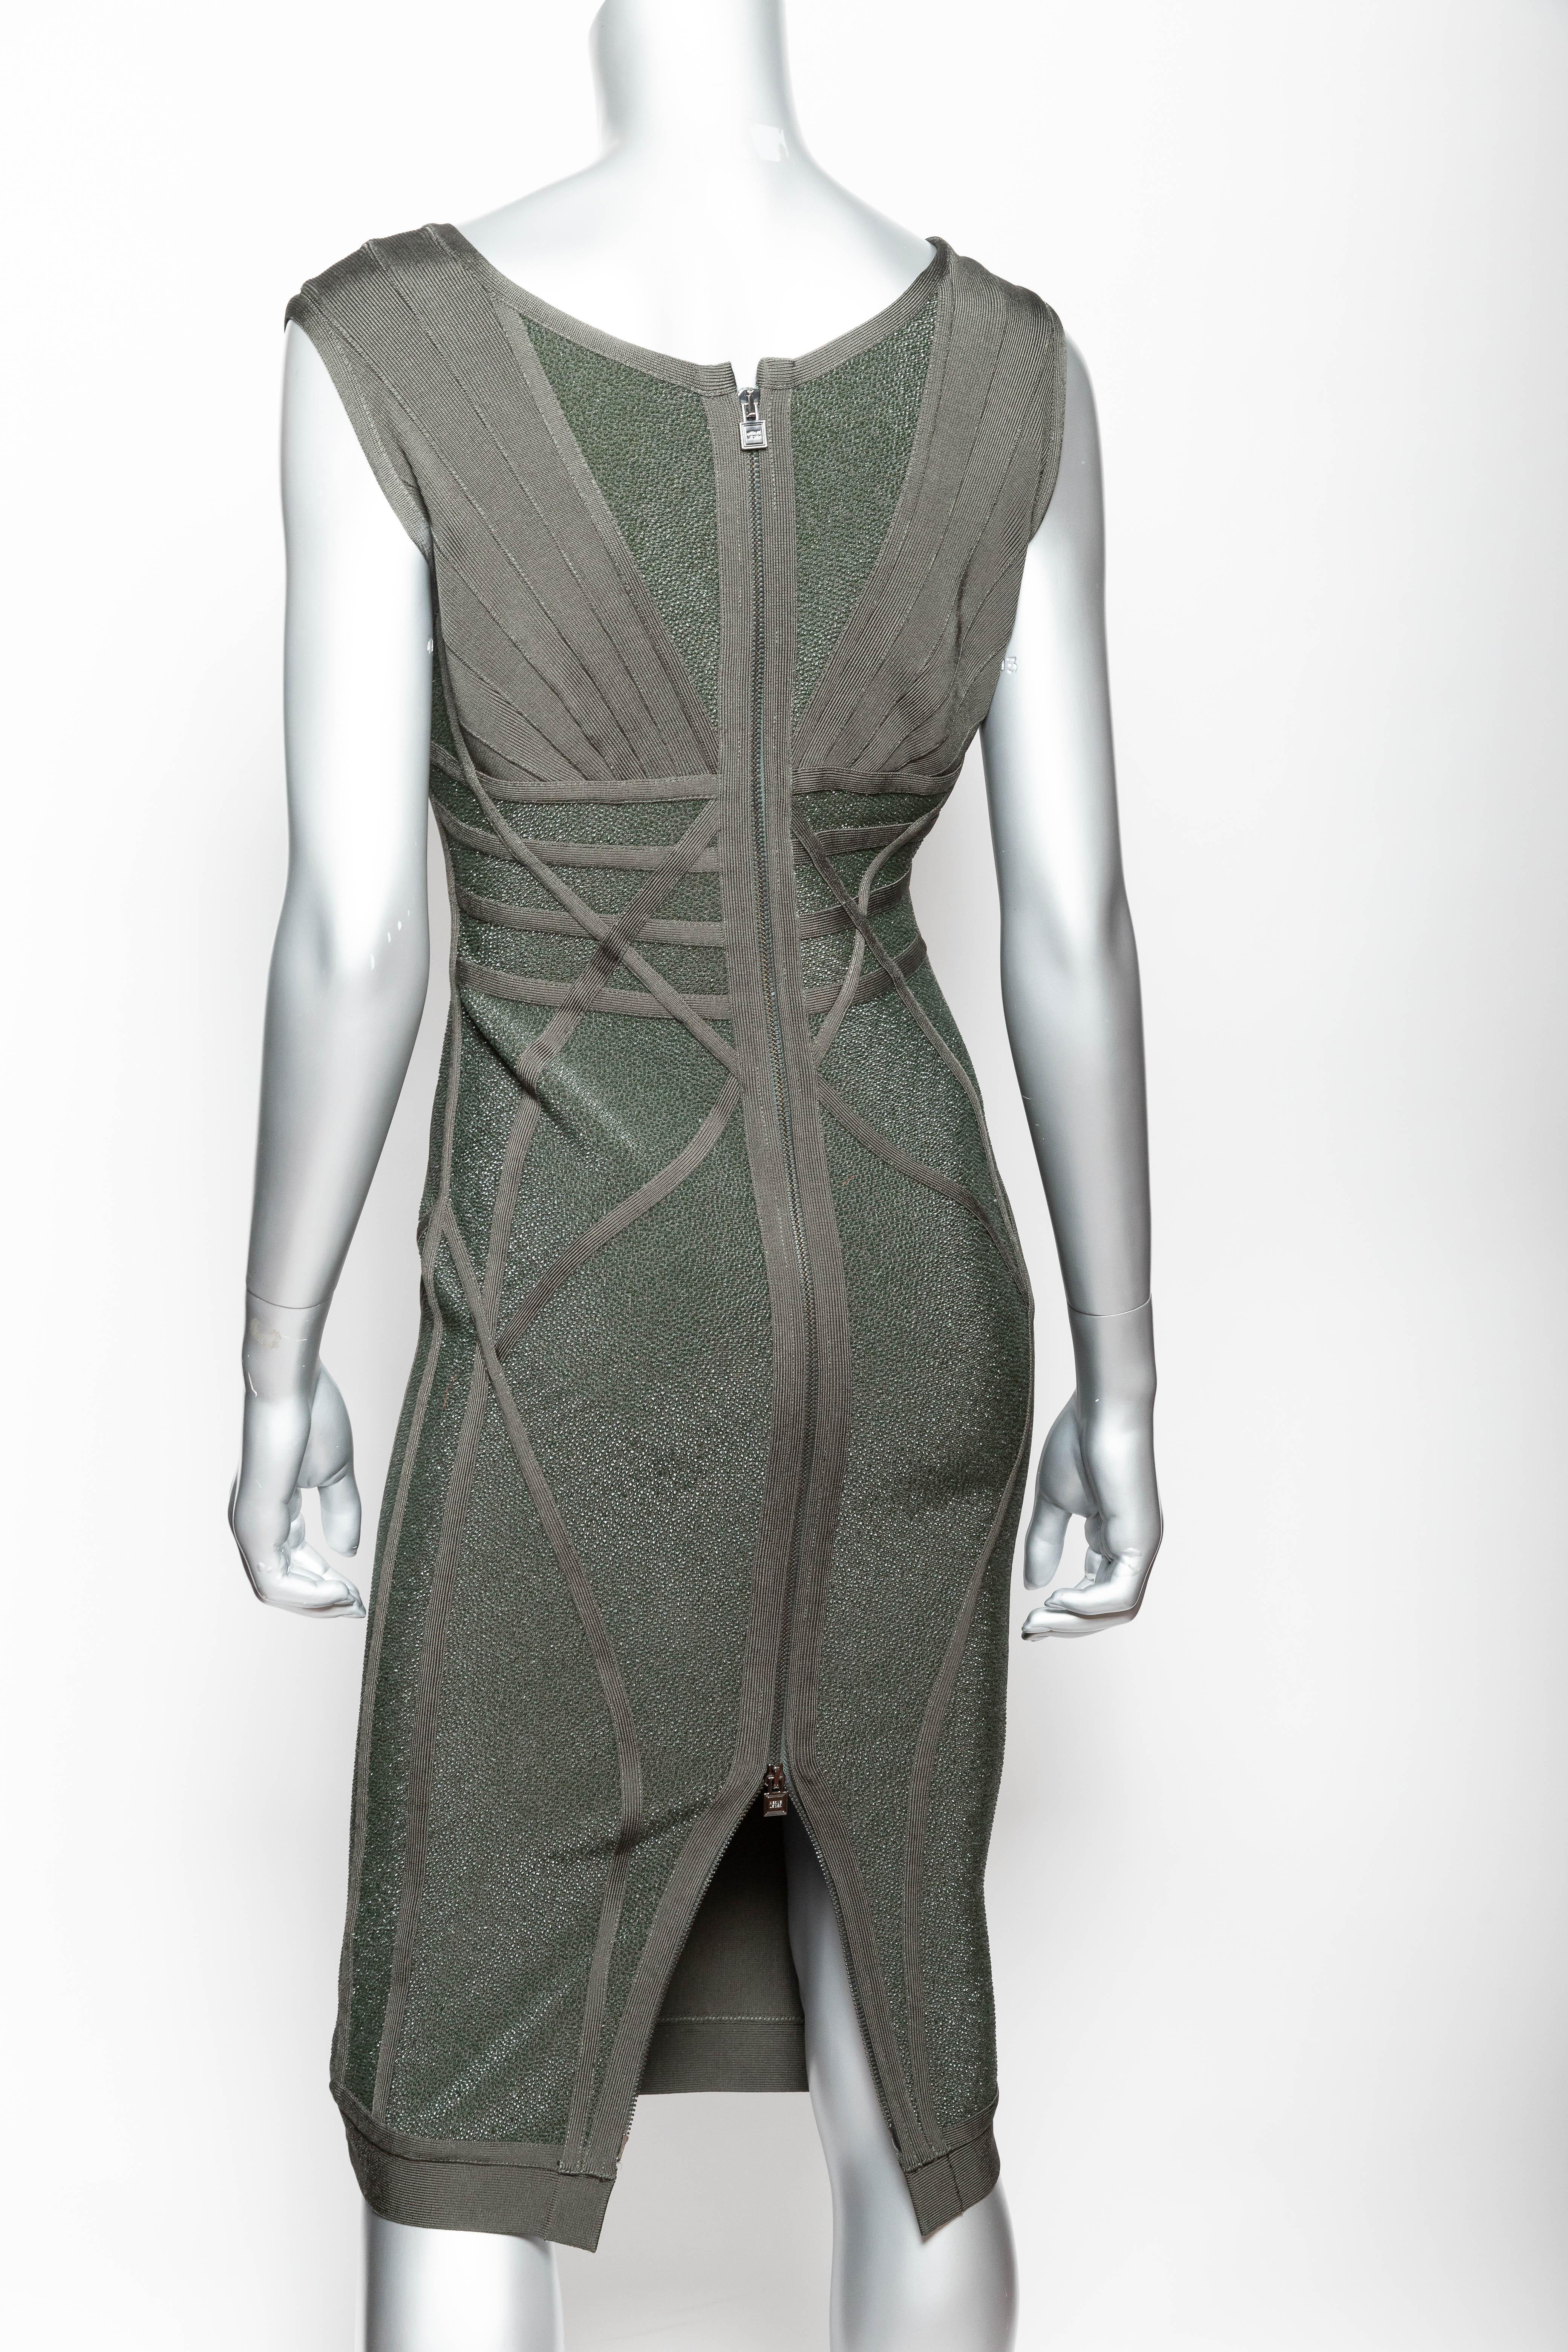 Herve Leger Dress - Medium For Sale 3